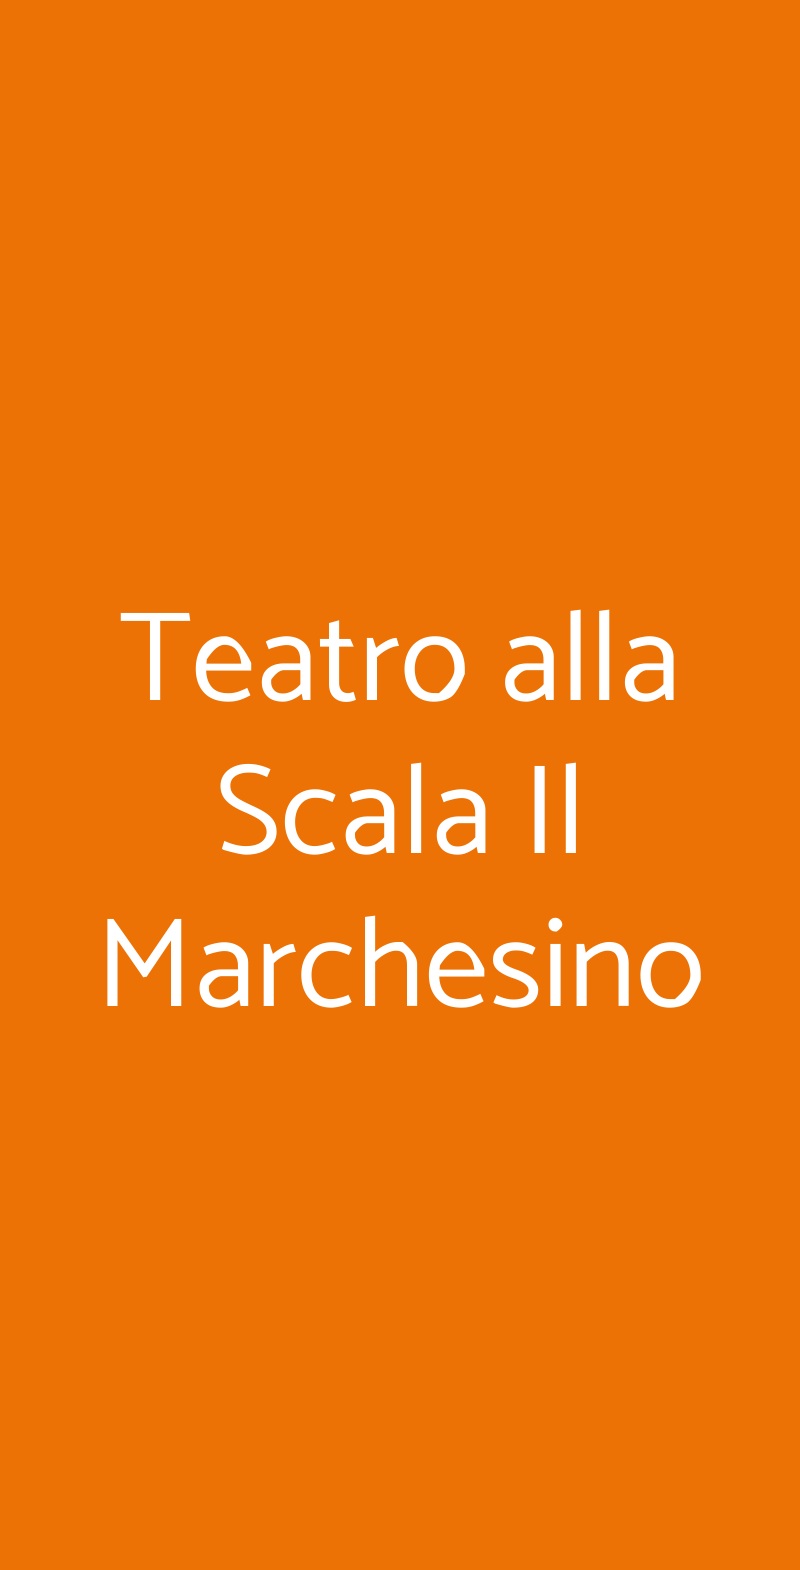 Teatro alla Scala Il Marchesino Milano menù 1 pagina